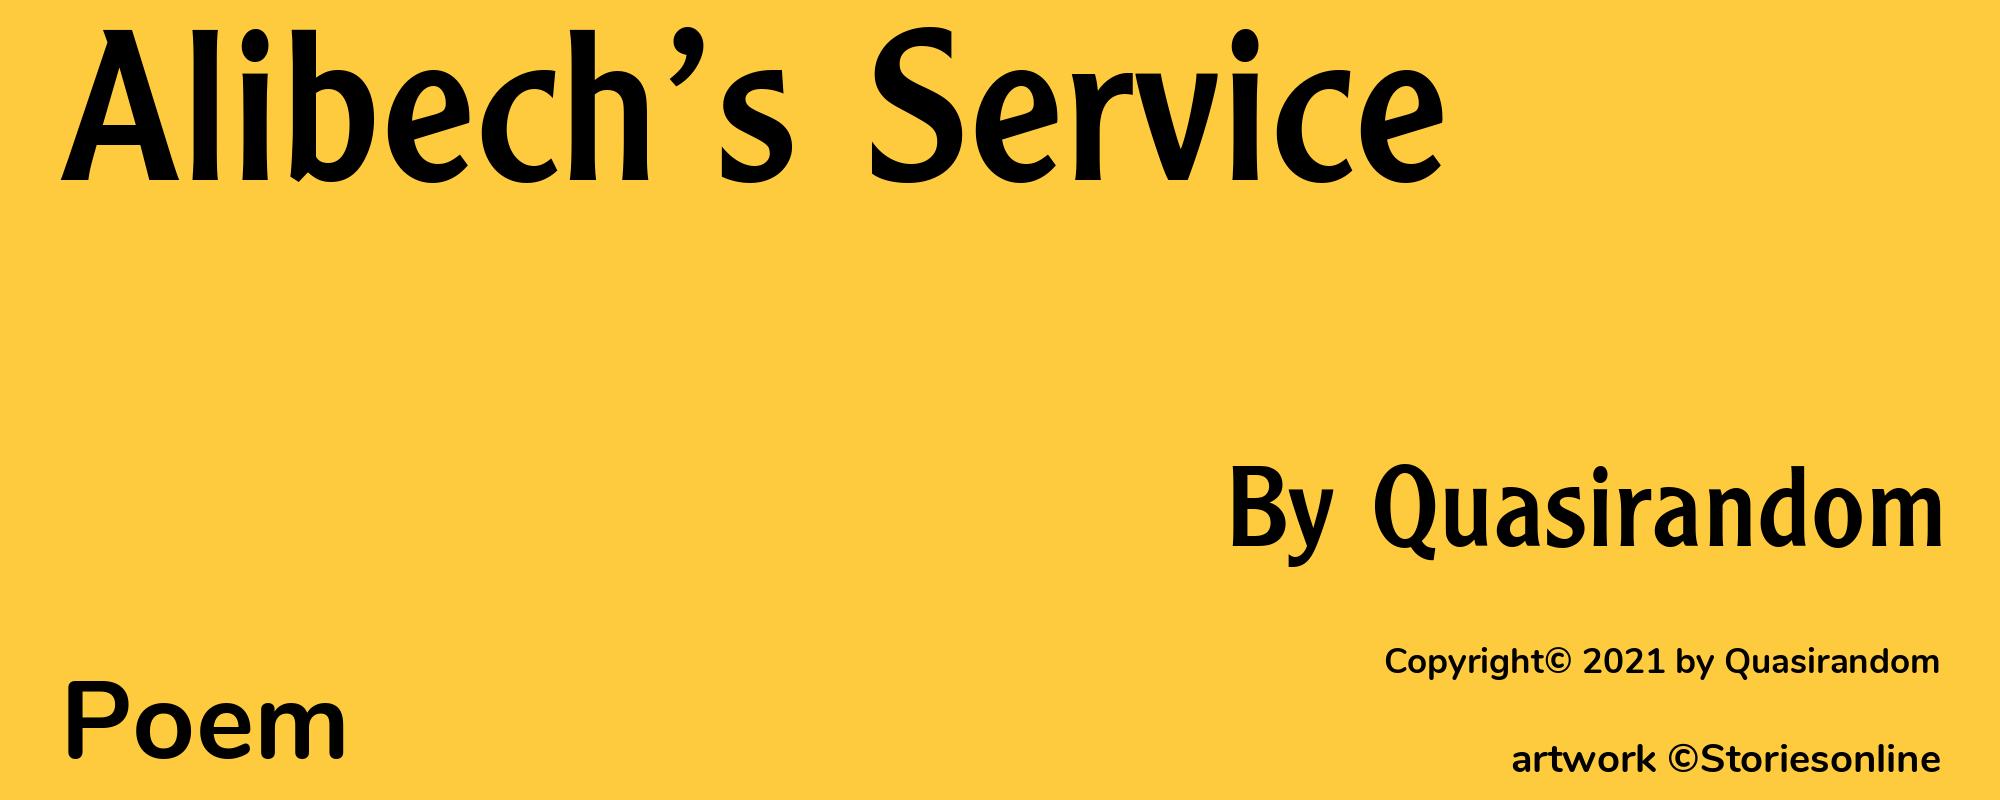 Alibech’s Service - Cover